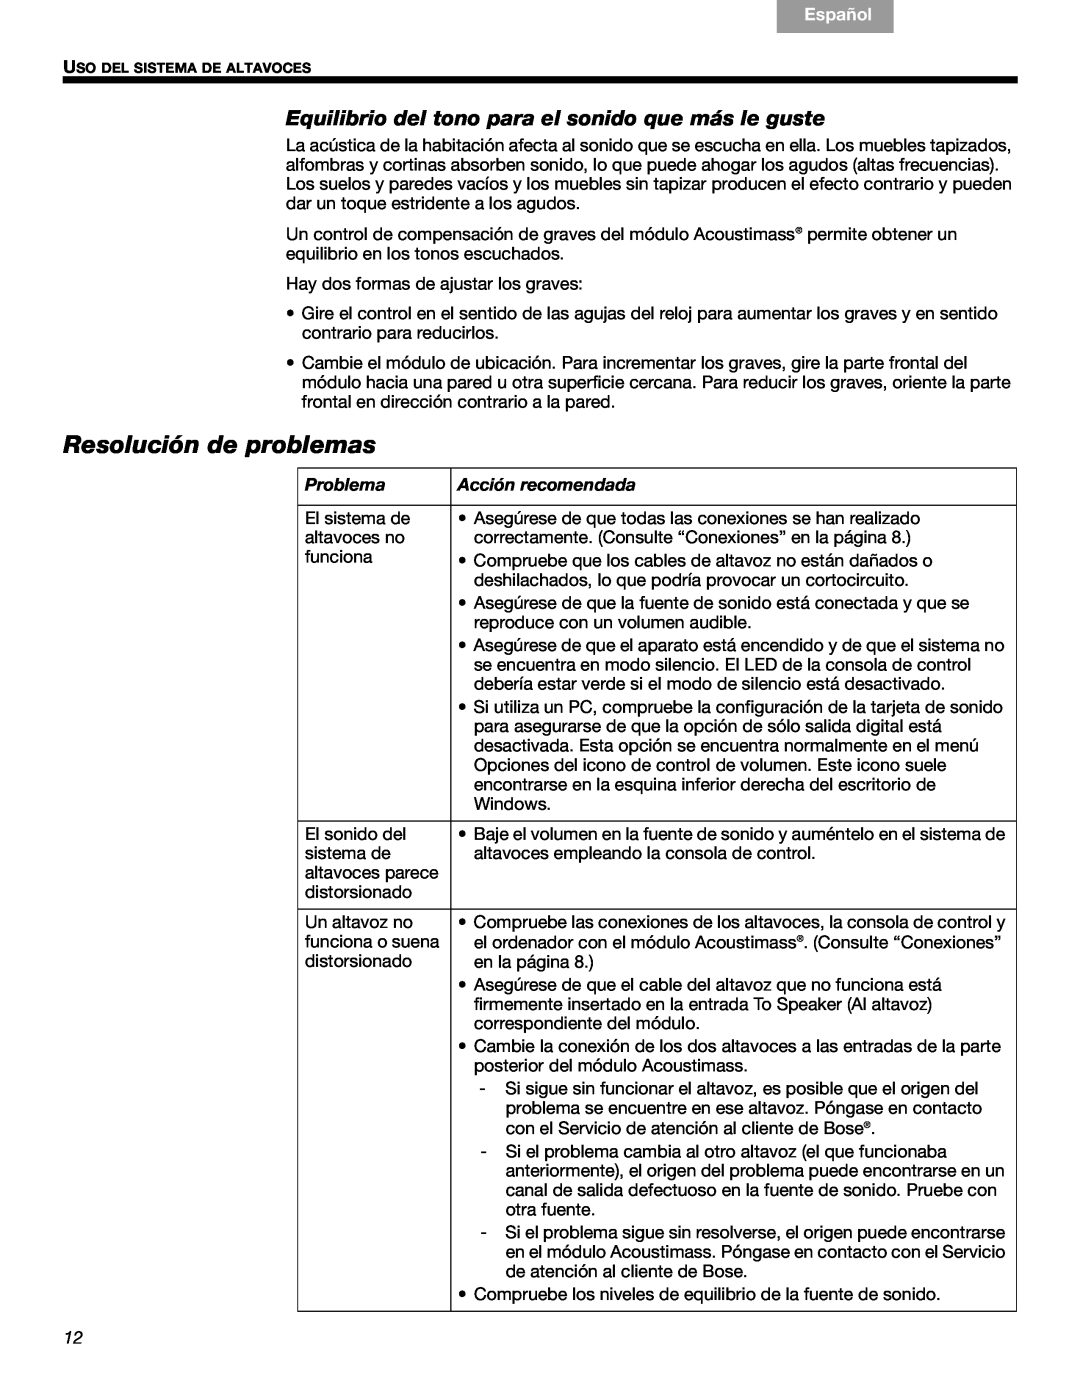 Bose 3 manual Resolución de problemas, Problema, Acción recomendada, Français, Español, English 